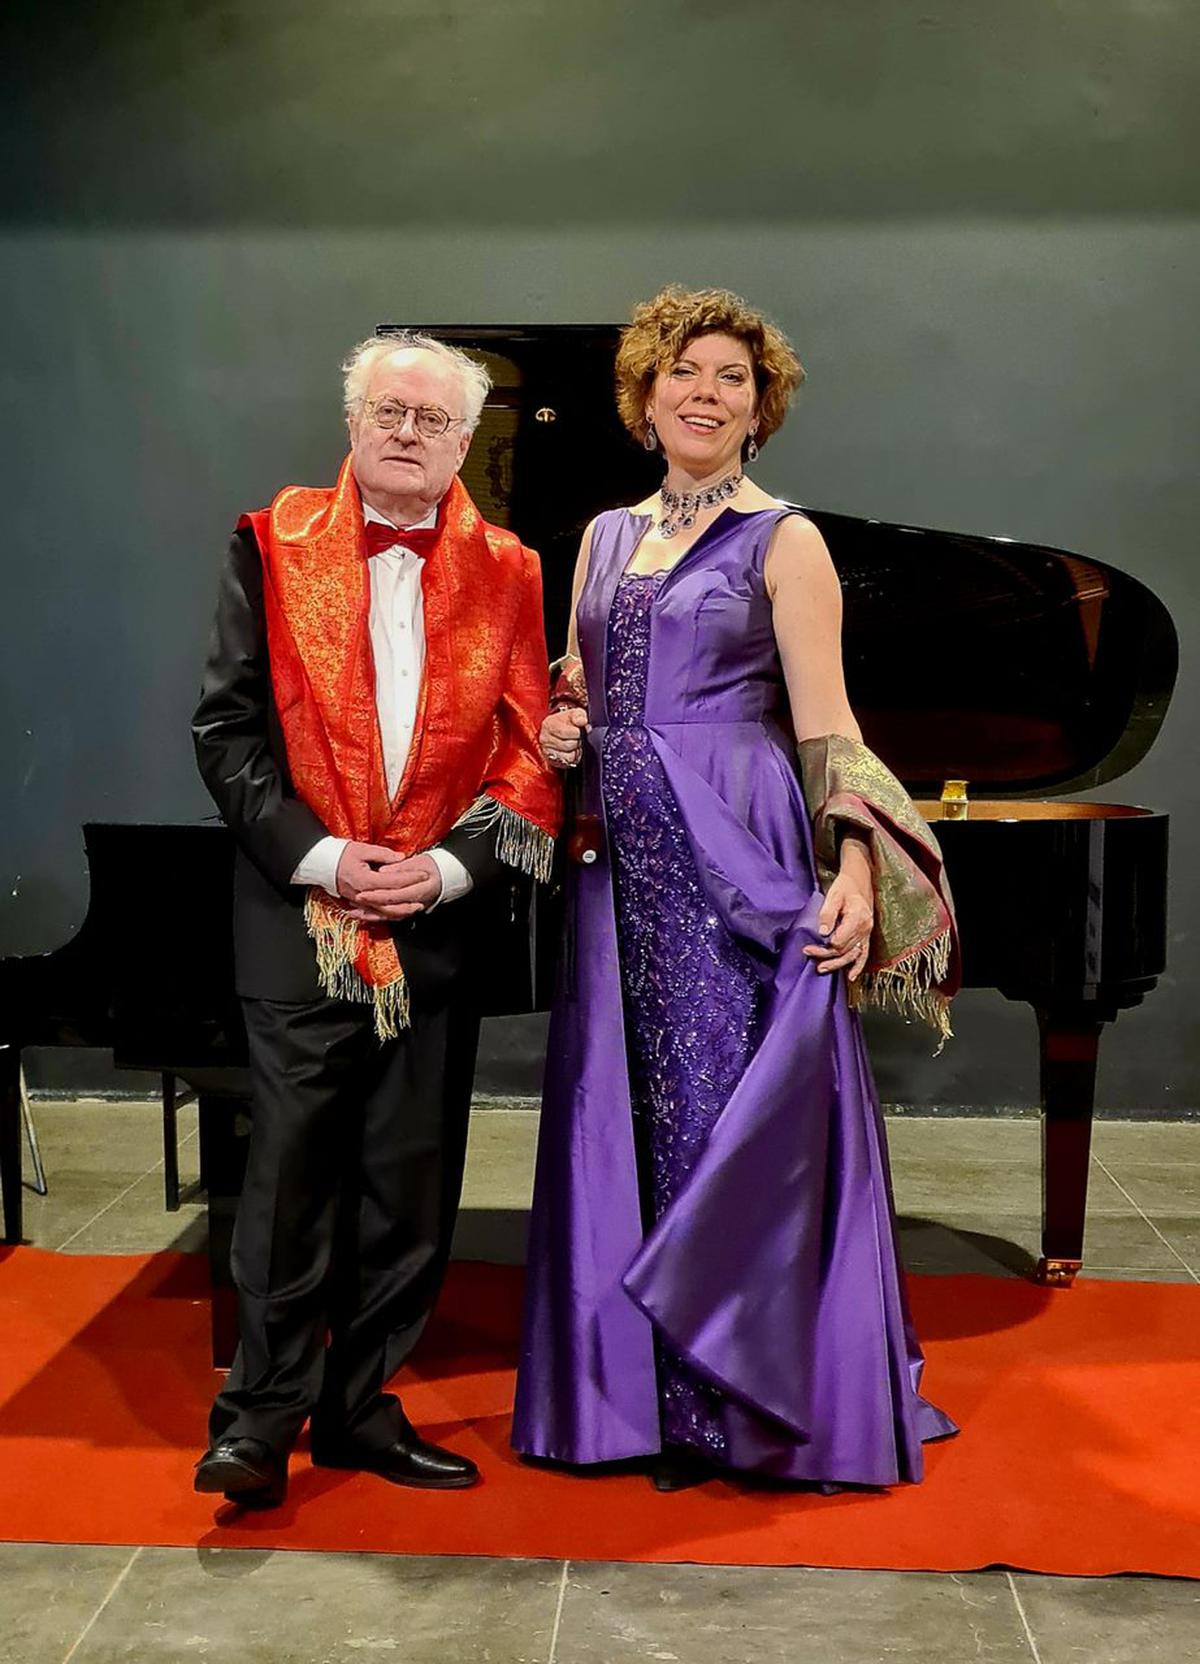 Bengt Forsberg and Maria Forsström